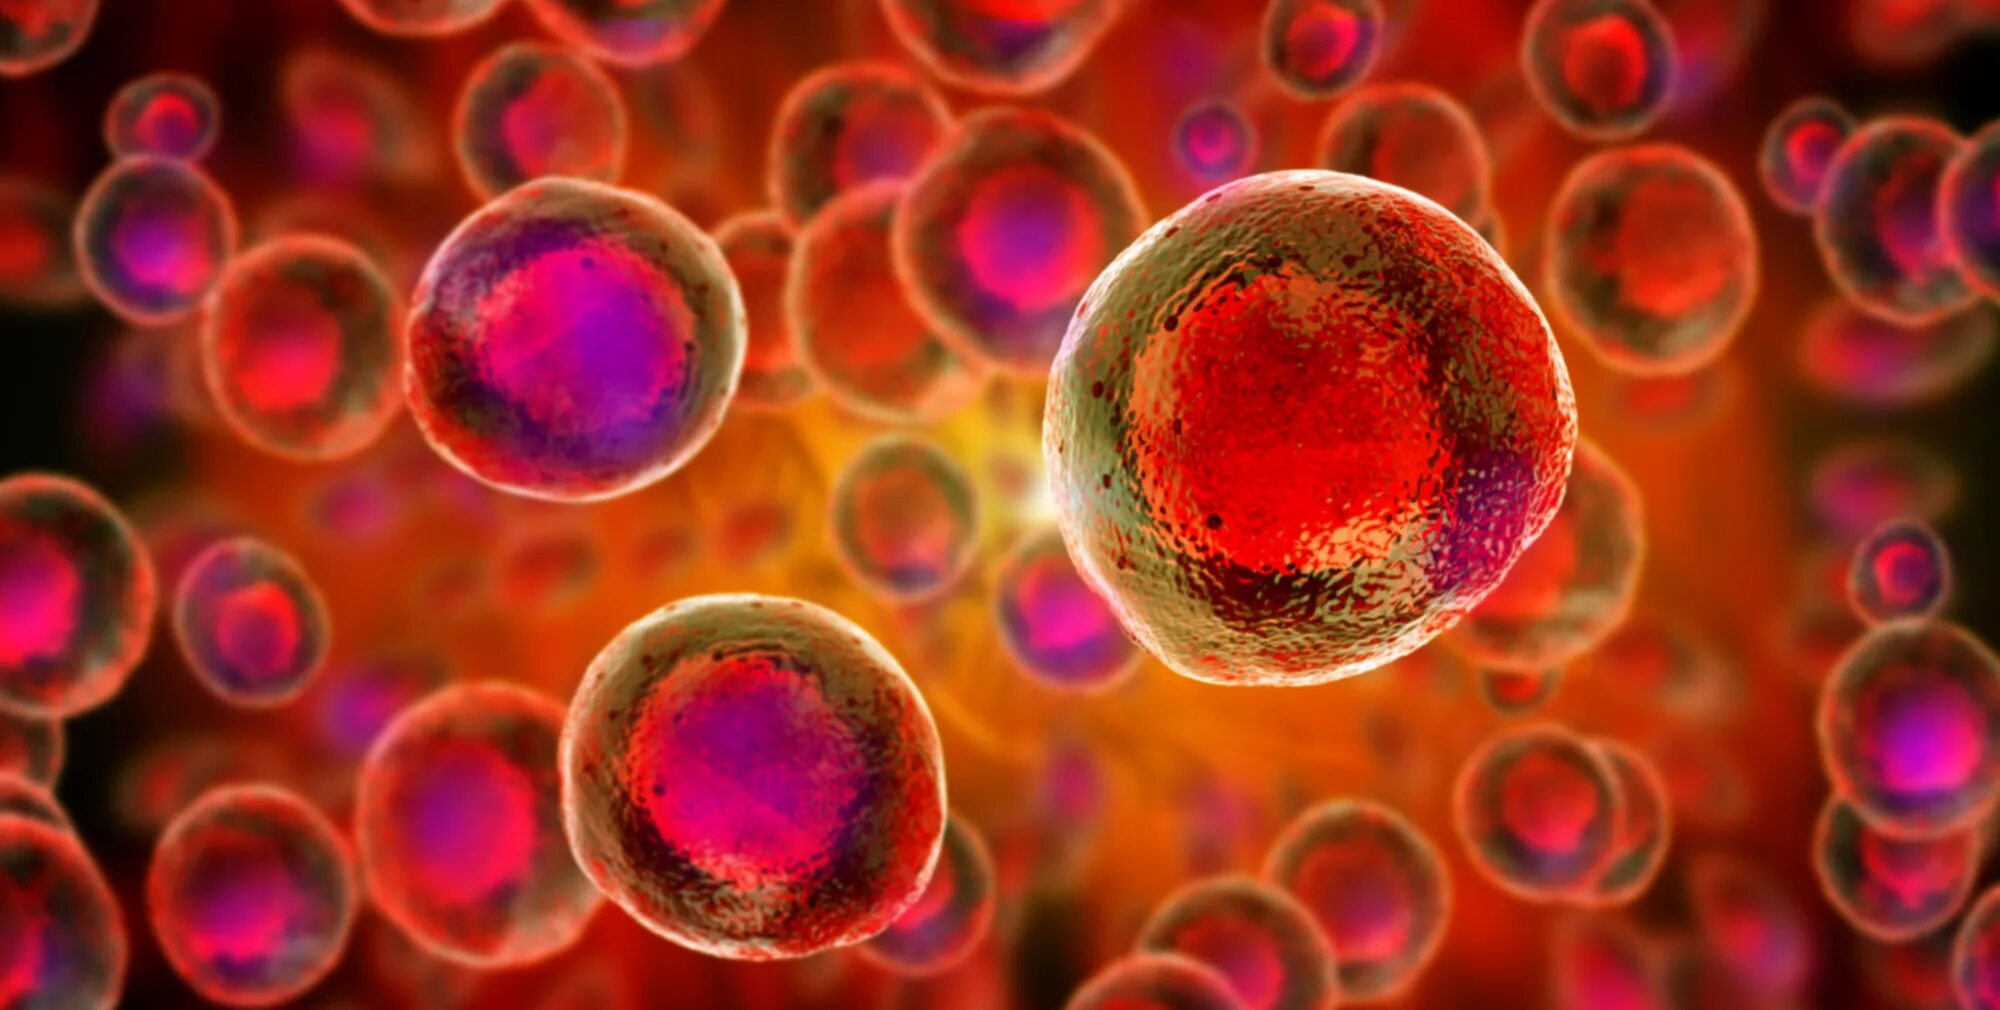 Сколько стволовых клеток. Эмбриональные стволовые клетки. Стволовые клетки в микроскопе. Стволовые клетки под микроскопом. Клеточная биология: стволовые клетки человека.